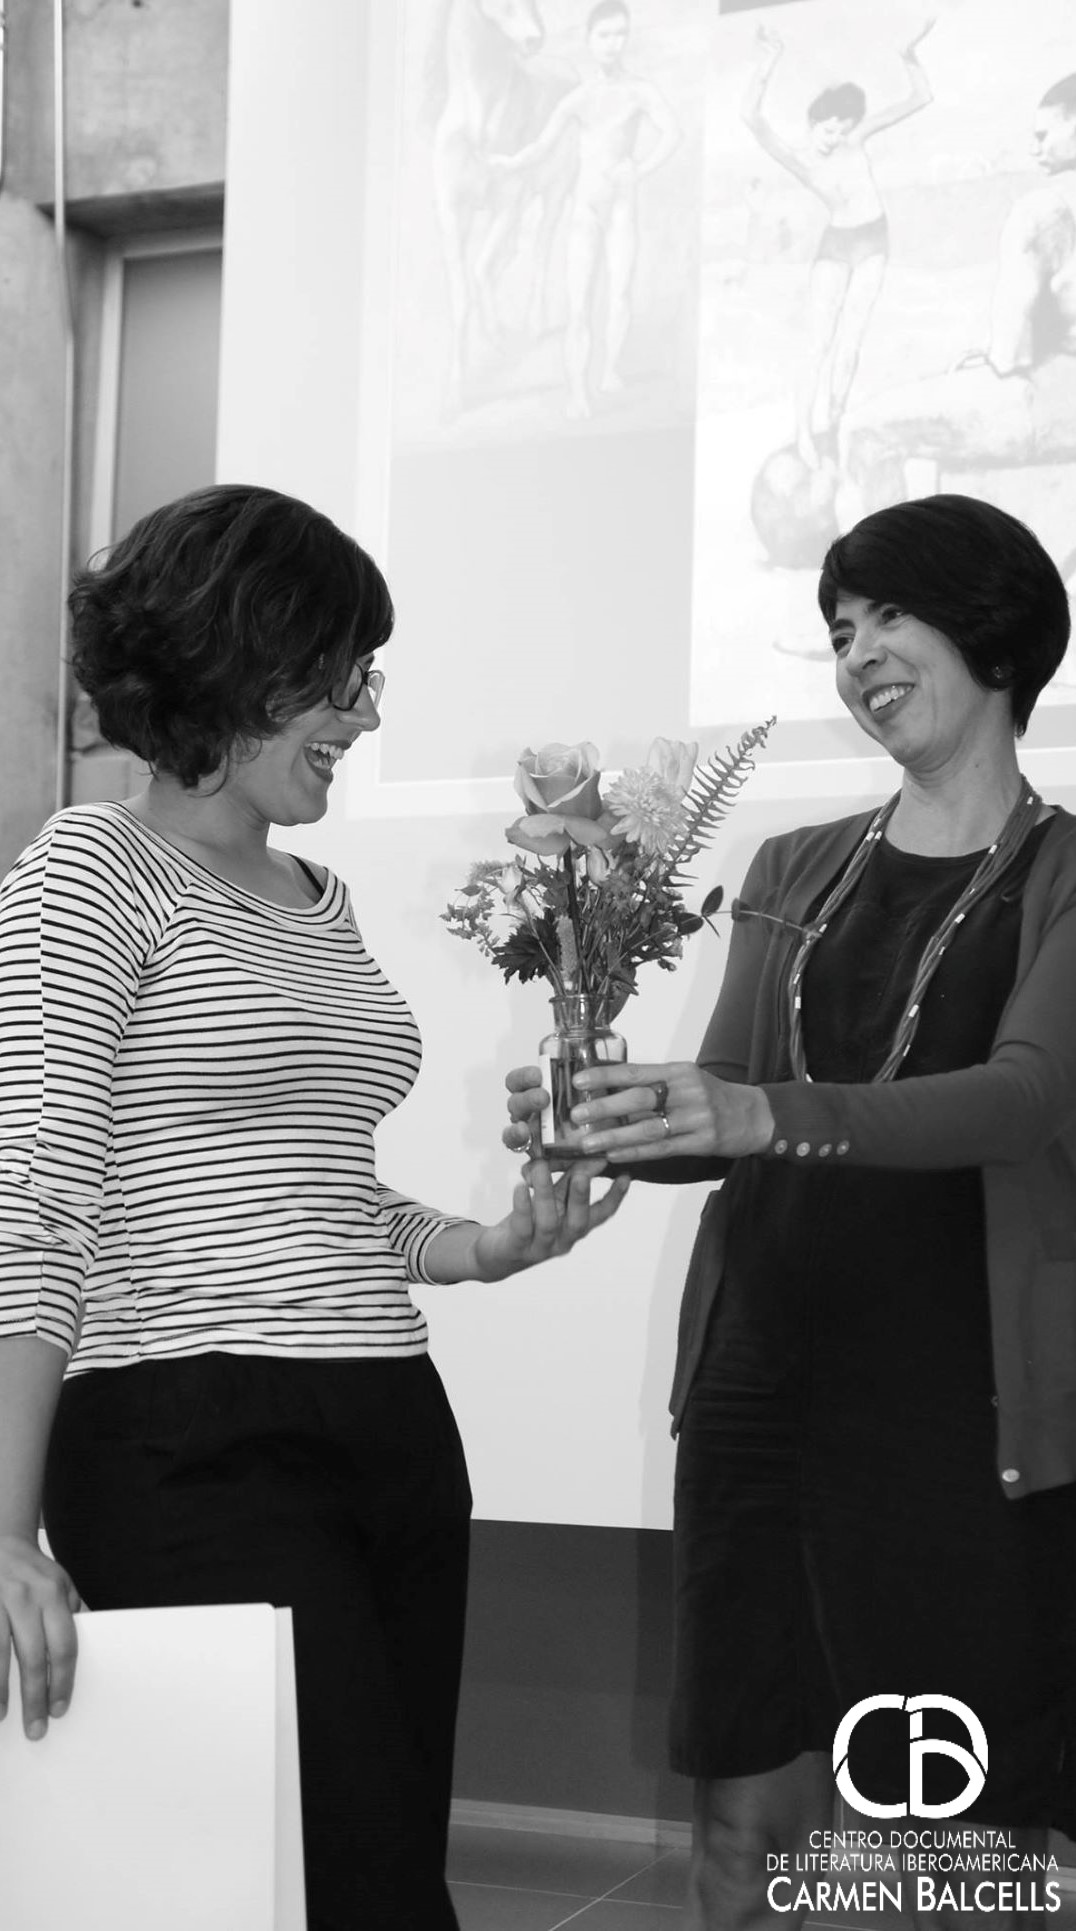 La dra. Teresa González le entrega flores a la ponente luego de la charla Foto: Mauricio Vaca